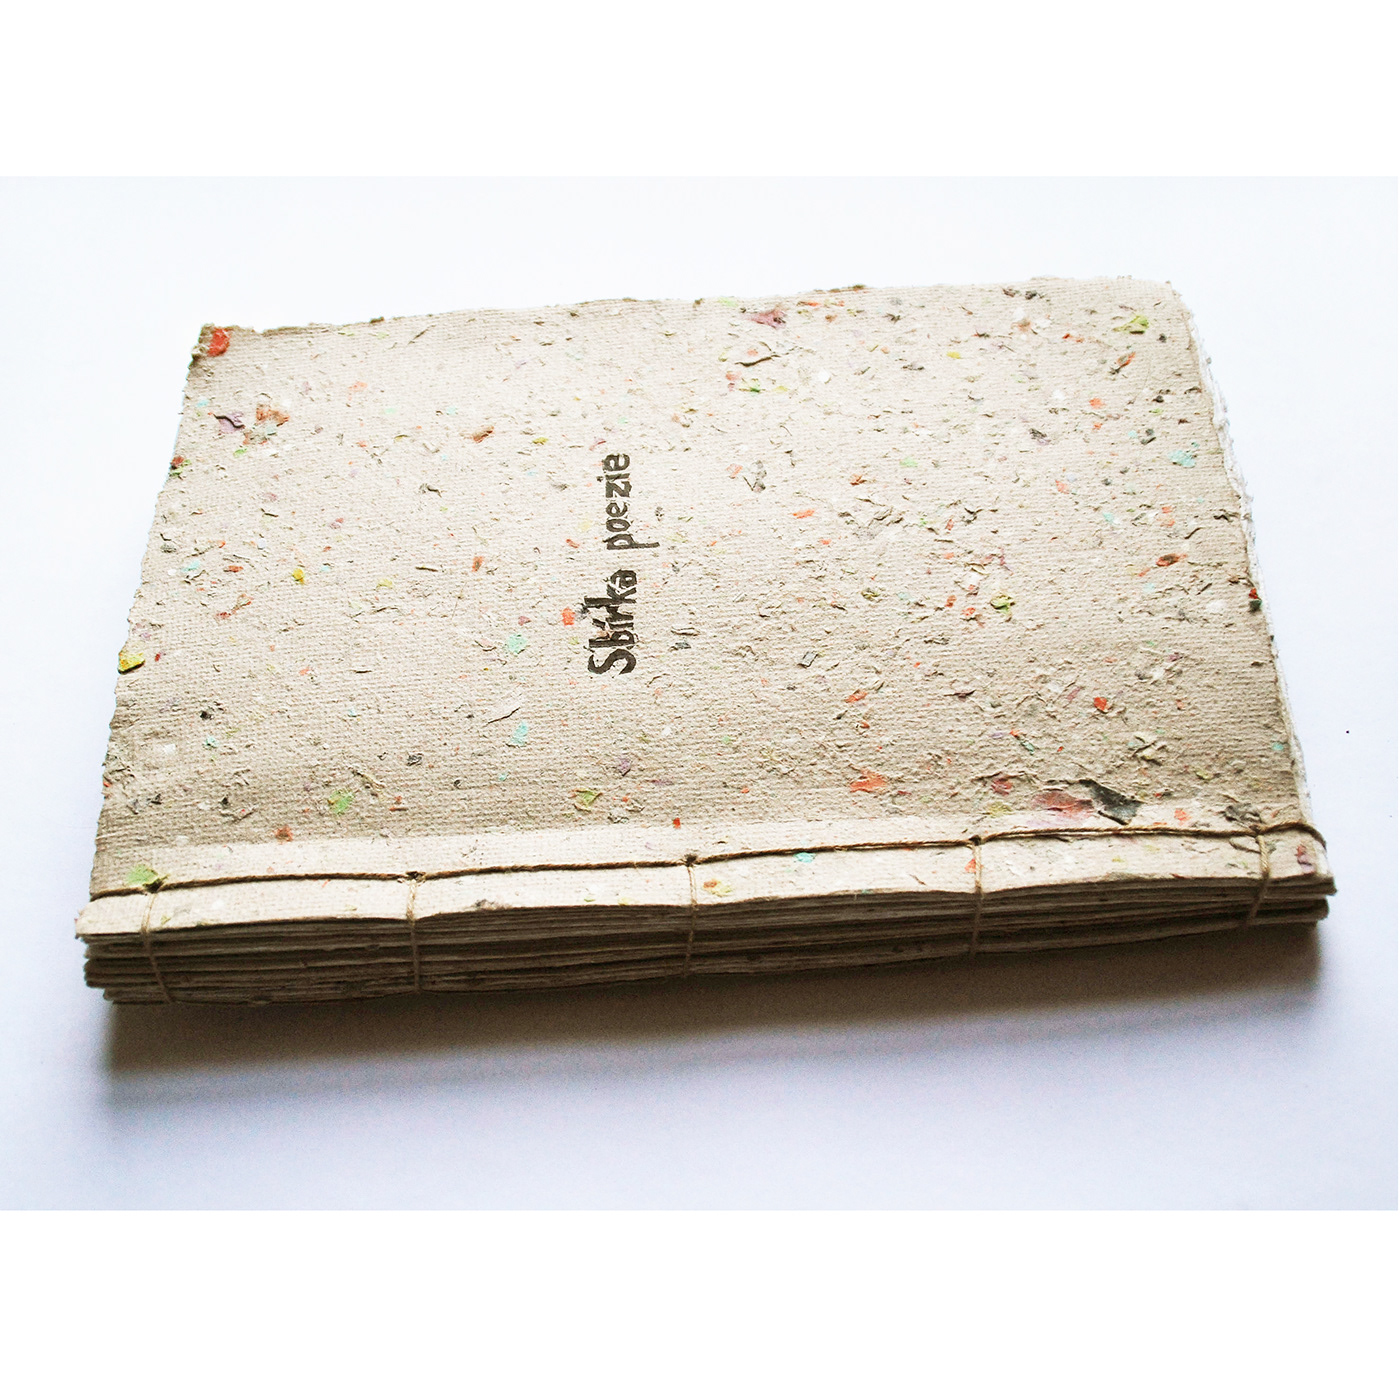 handmade paper Poetry  linocut Printing book